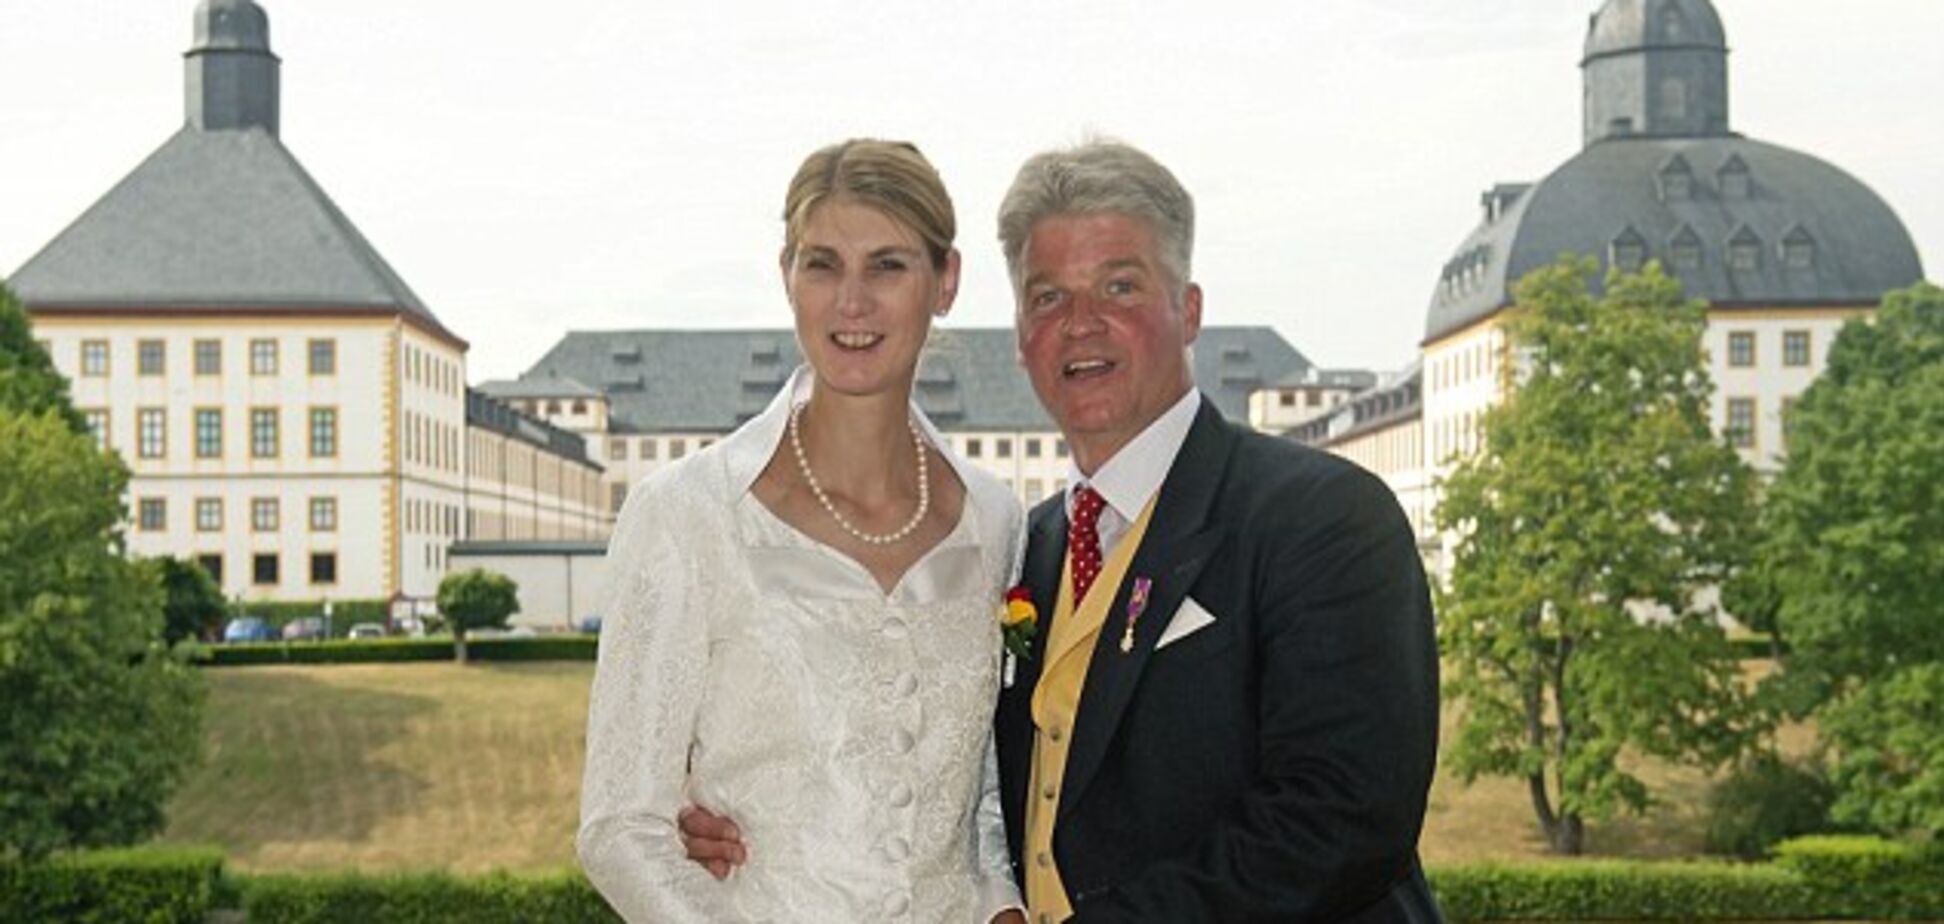 Первый раз в 46 лет: в Германии состоялась королевская свадьба